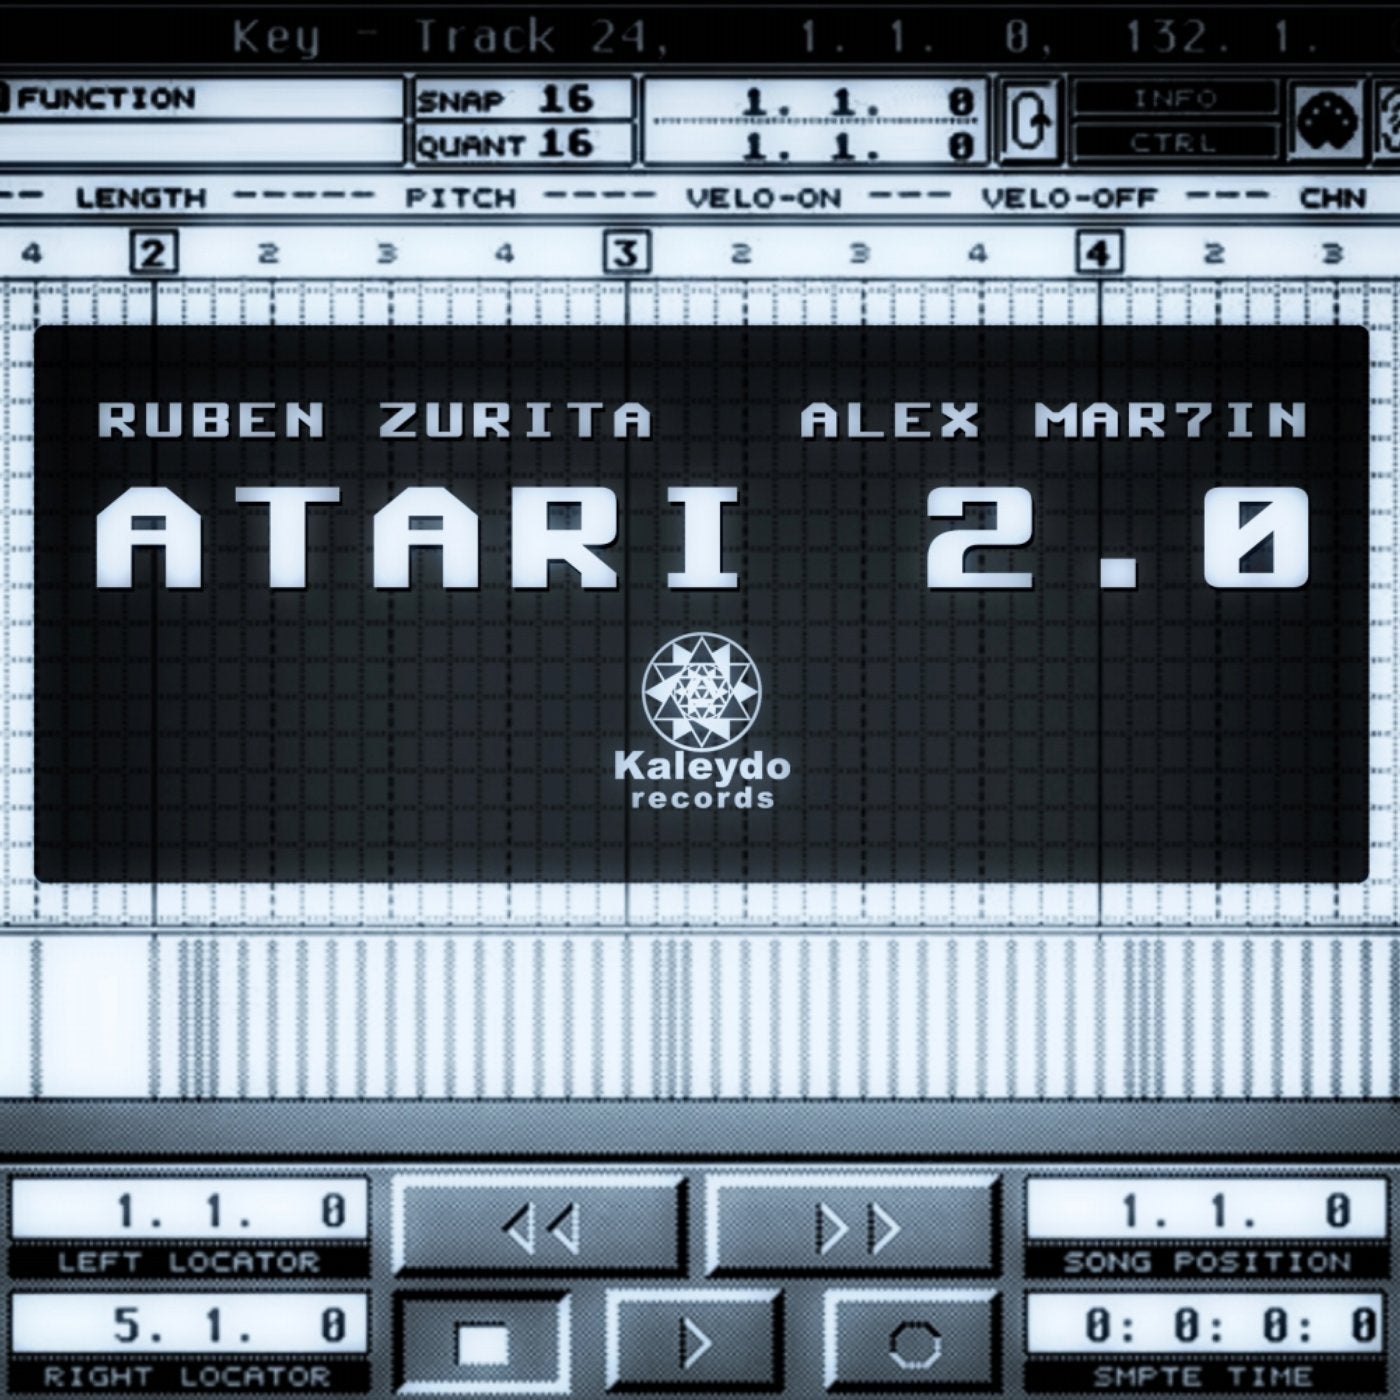 Atari 2.0